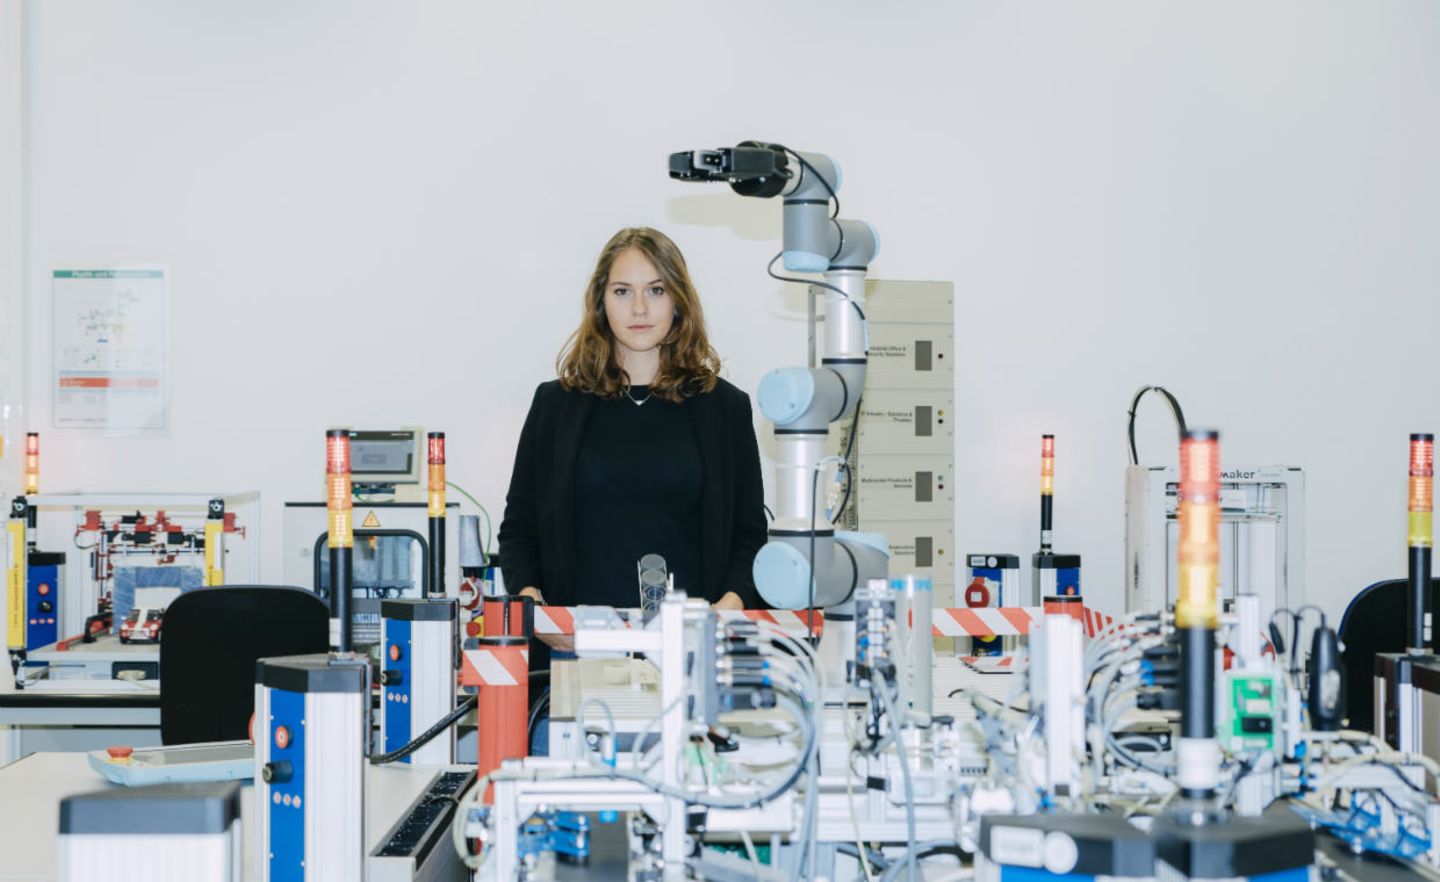 Olga Ohlsson hat im vergangenen Jahr ein duales Studium in Wirtschaftsinformatik bei Siemens begonnen. Zu ihren Ausbildungsstationen gehört auch die Arbeit im Projektraum Automatisierungstechnik